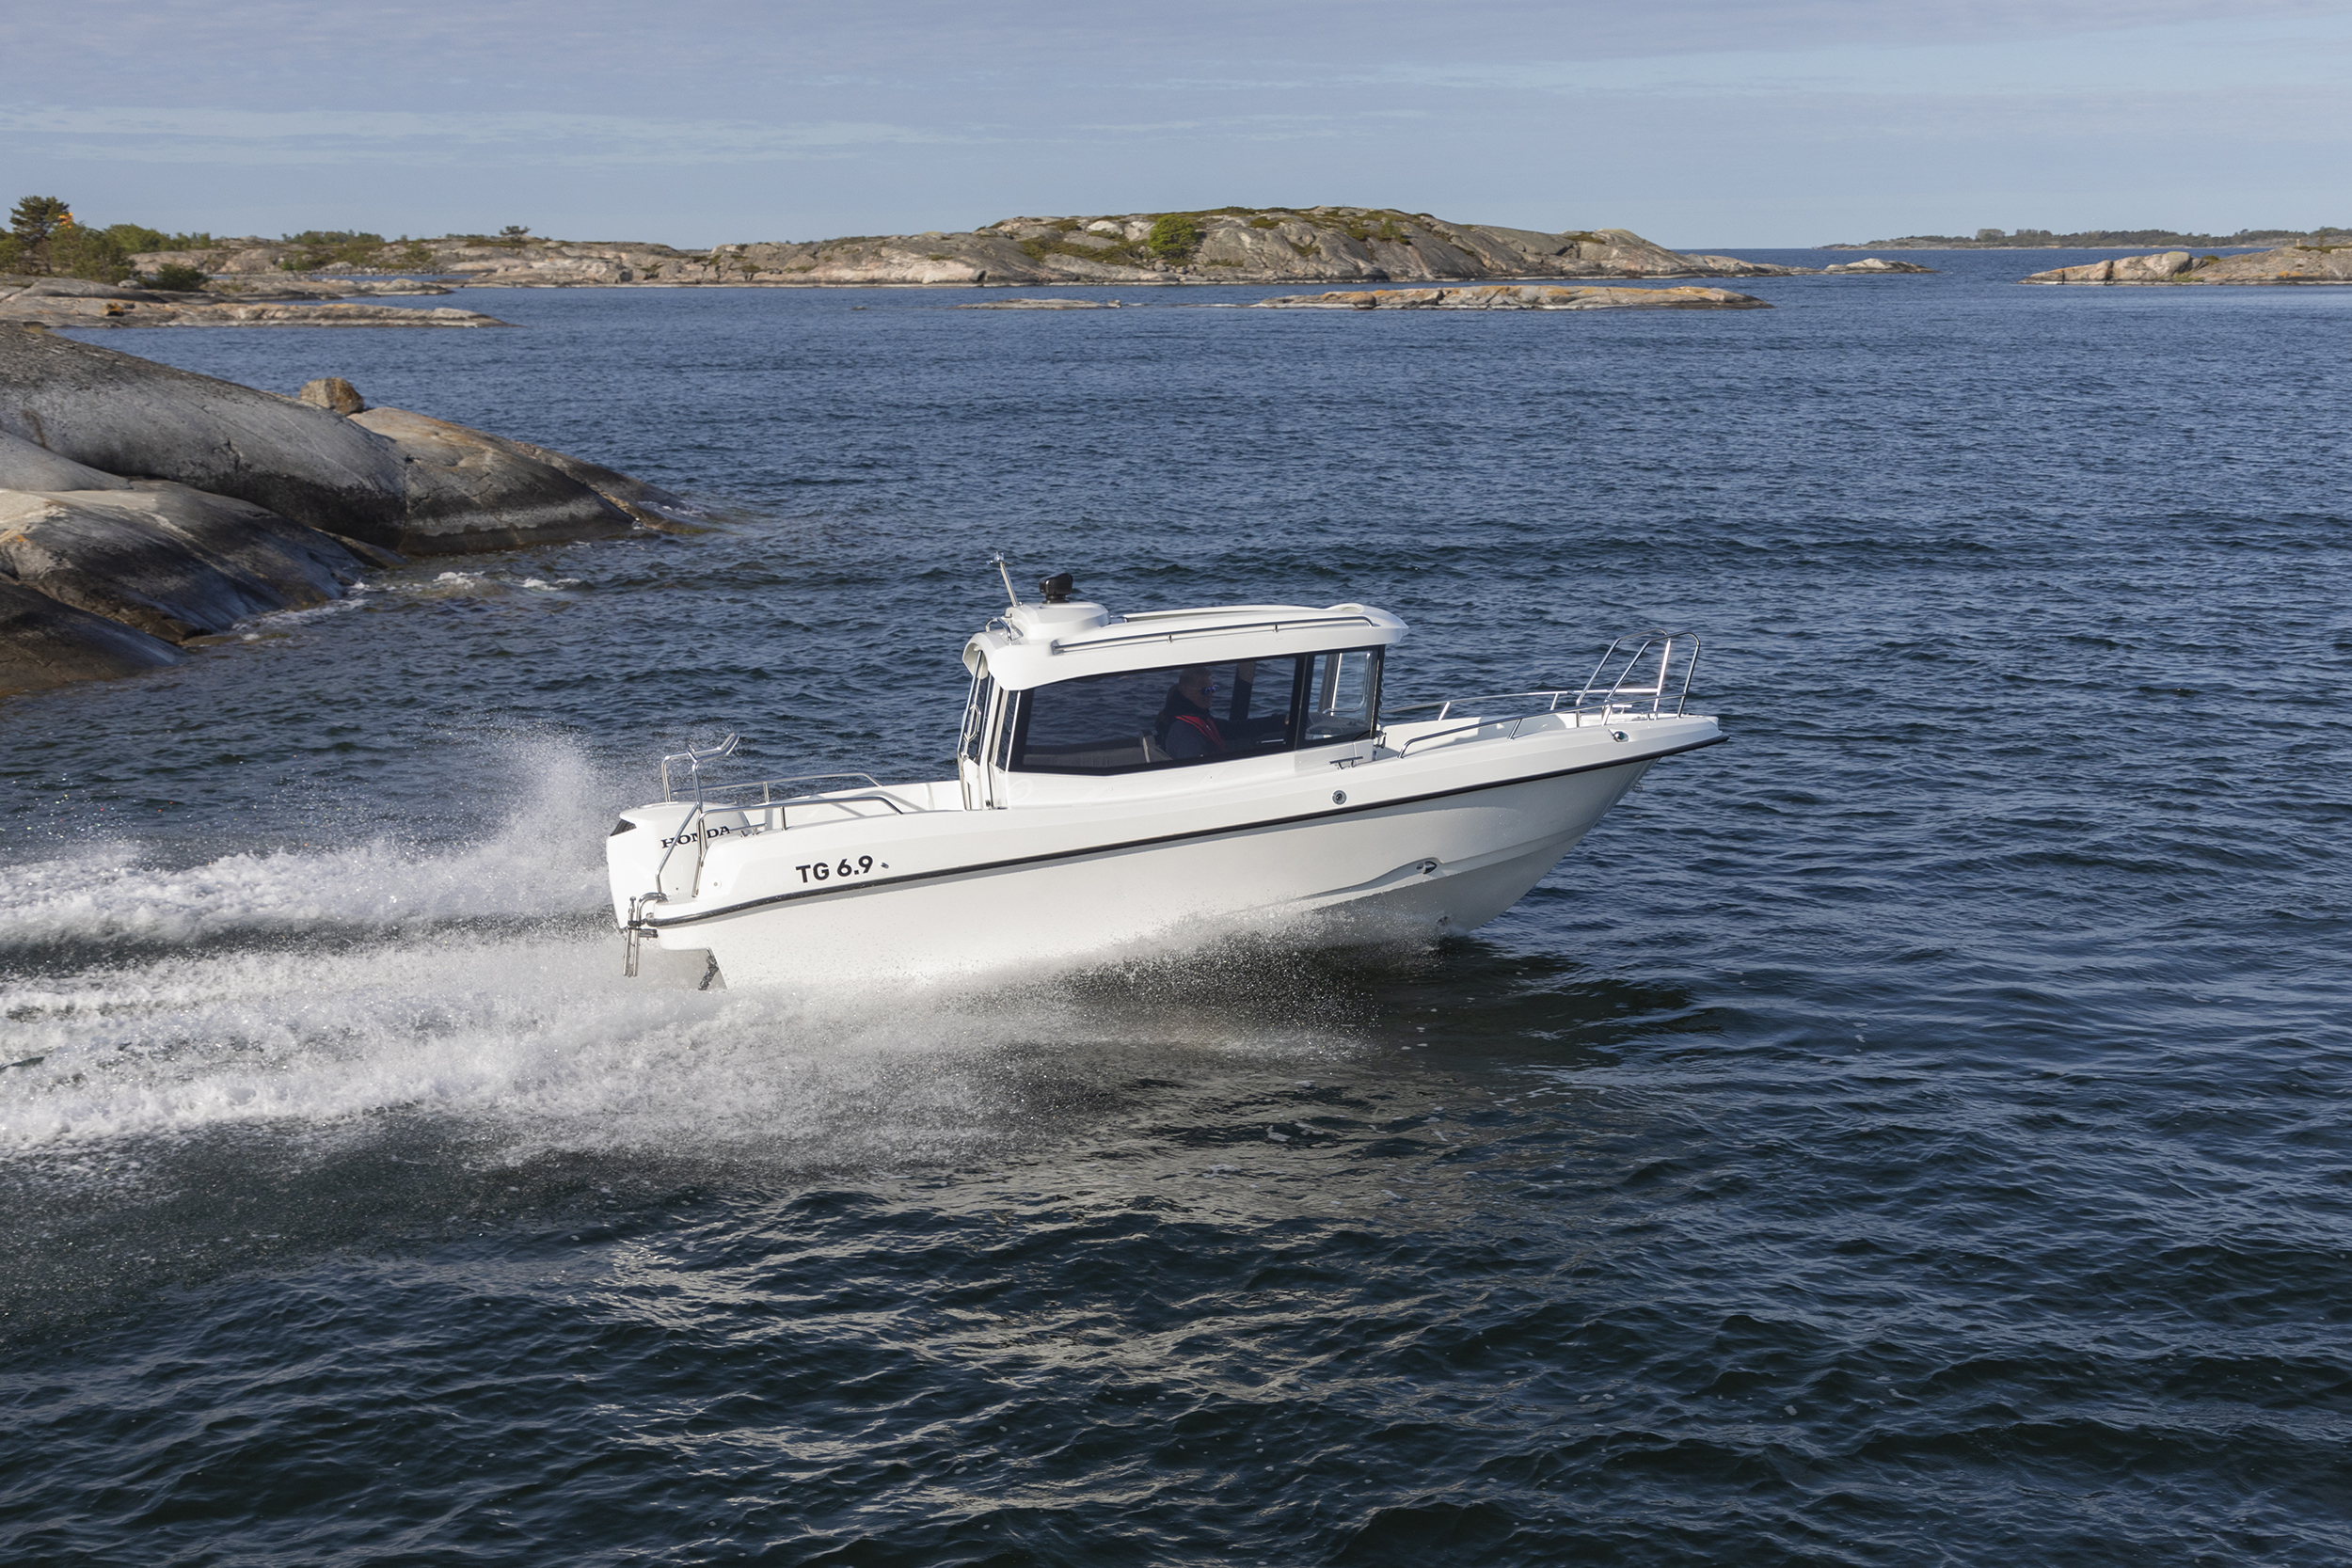 TG 6.9 kabinbåten med Honda-utombordare kör i hög fart i finska skärgården.